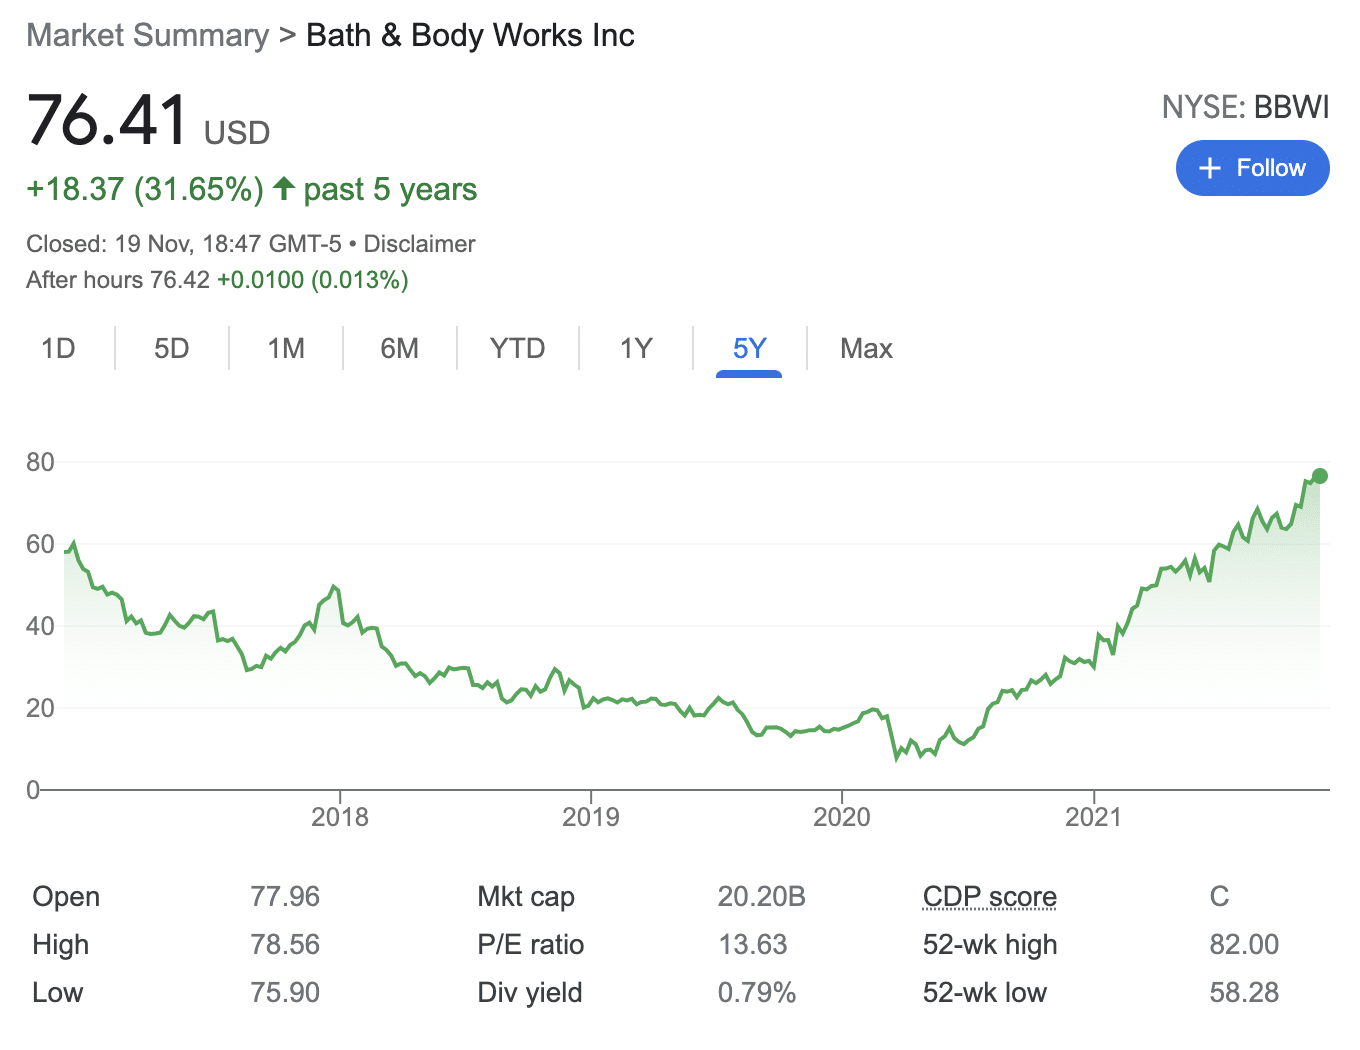 Bath & Body Works stock price